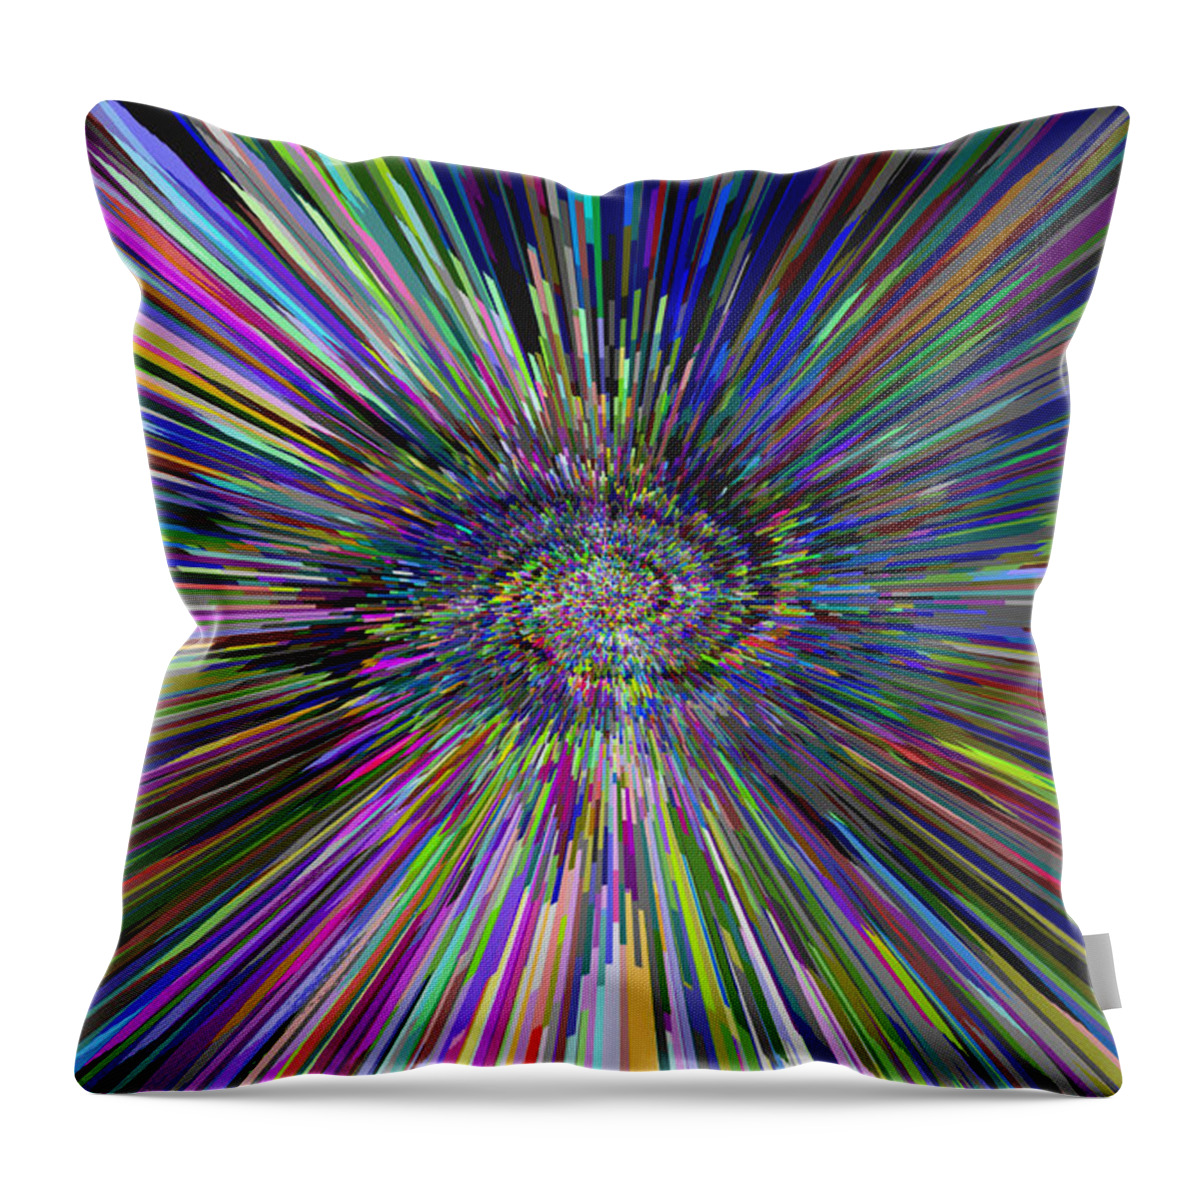 3d Throw Pillow featuring the digital art 3 D Dimensional Art Abstract by David Pyatt